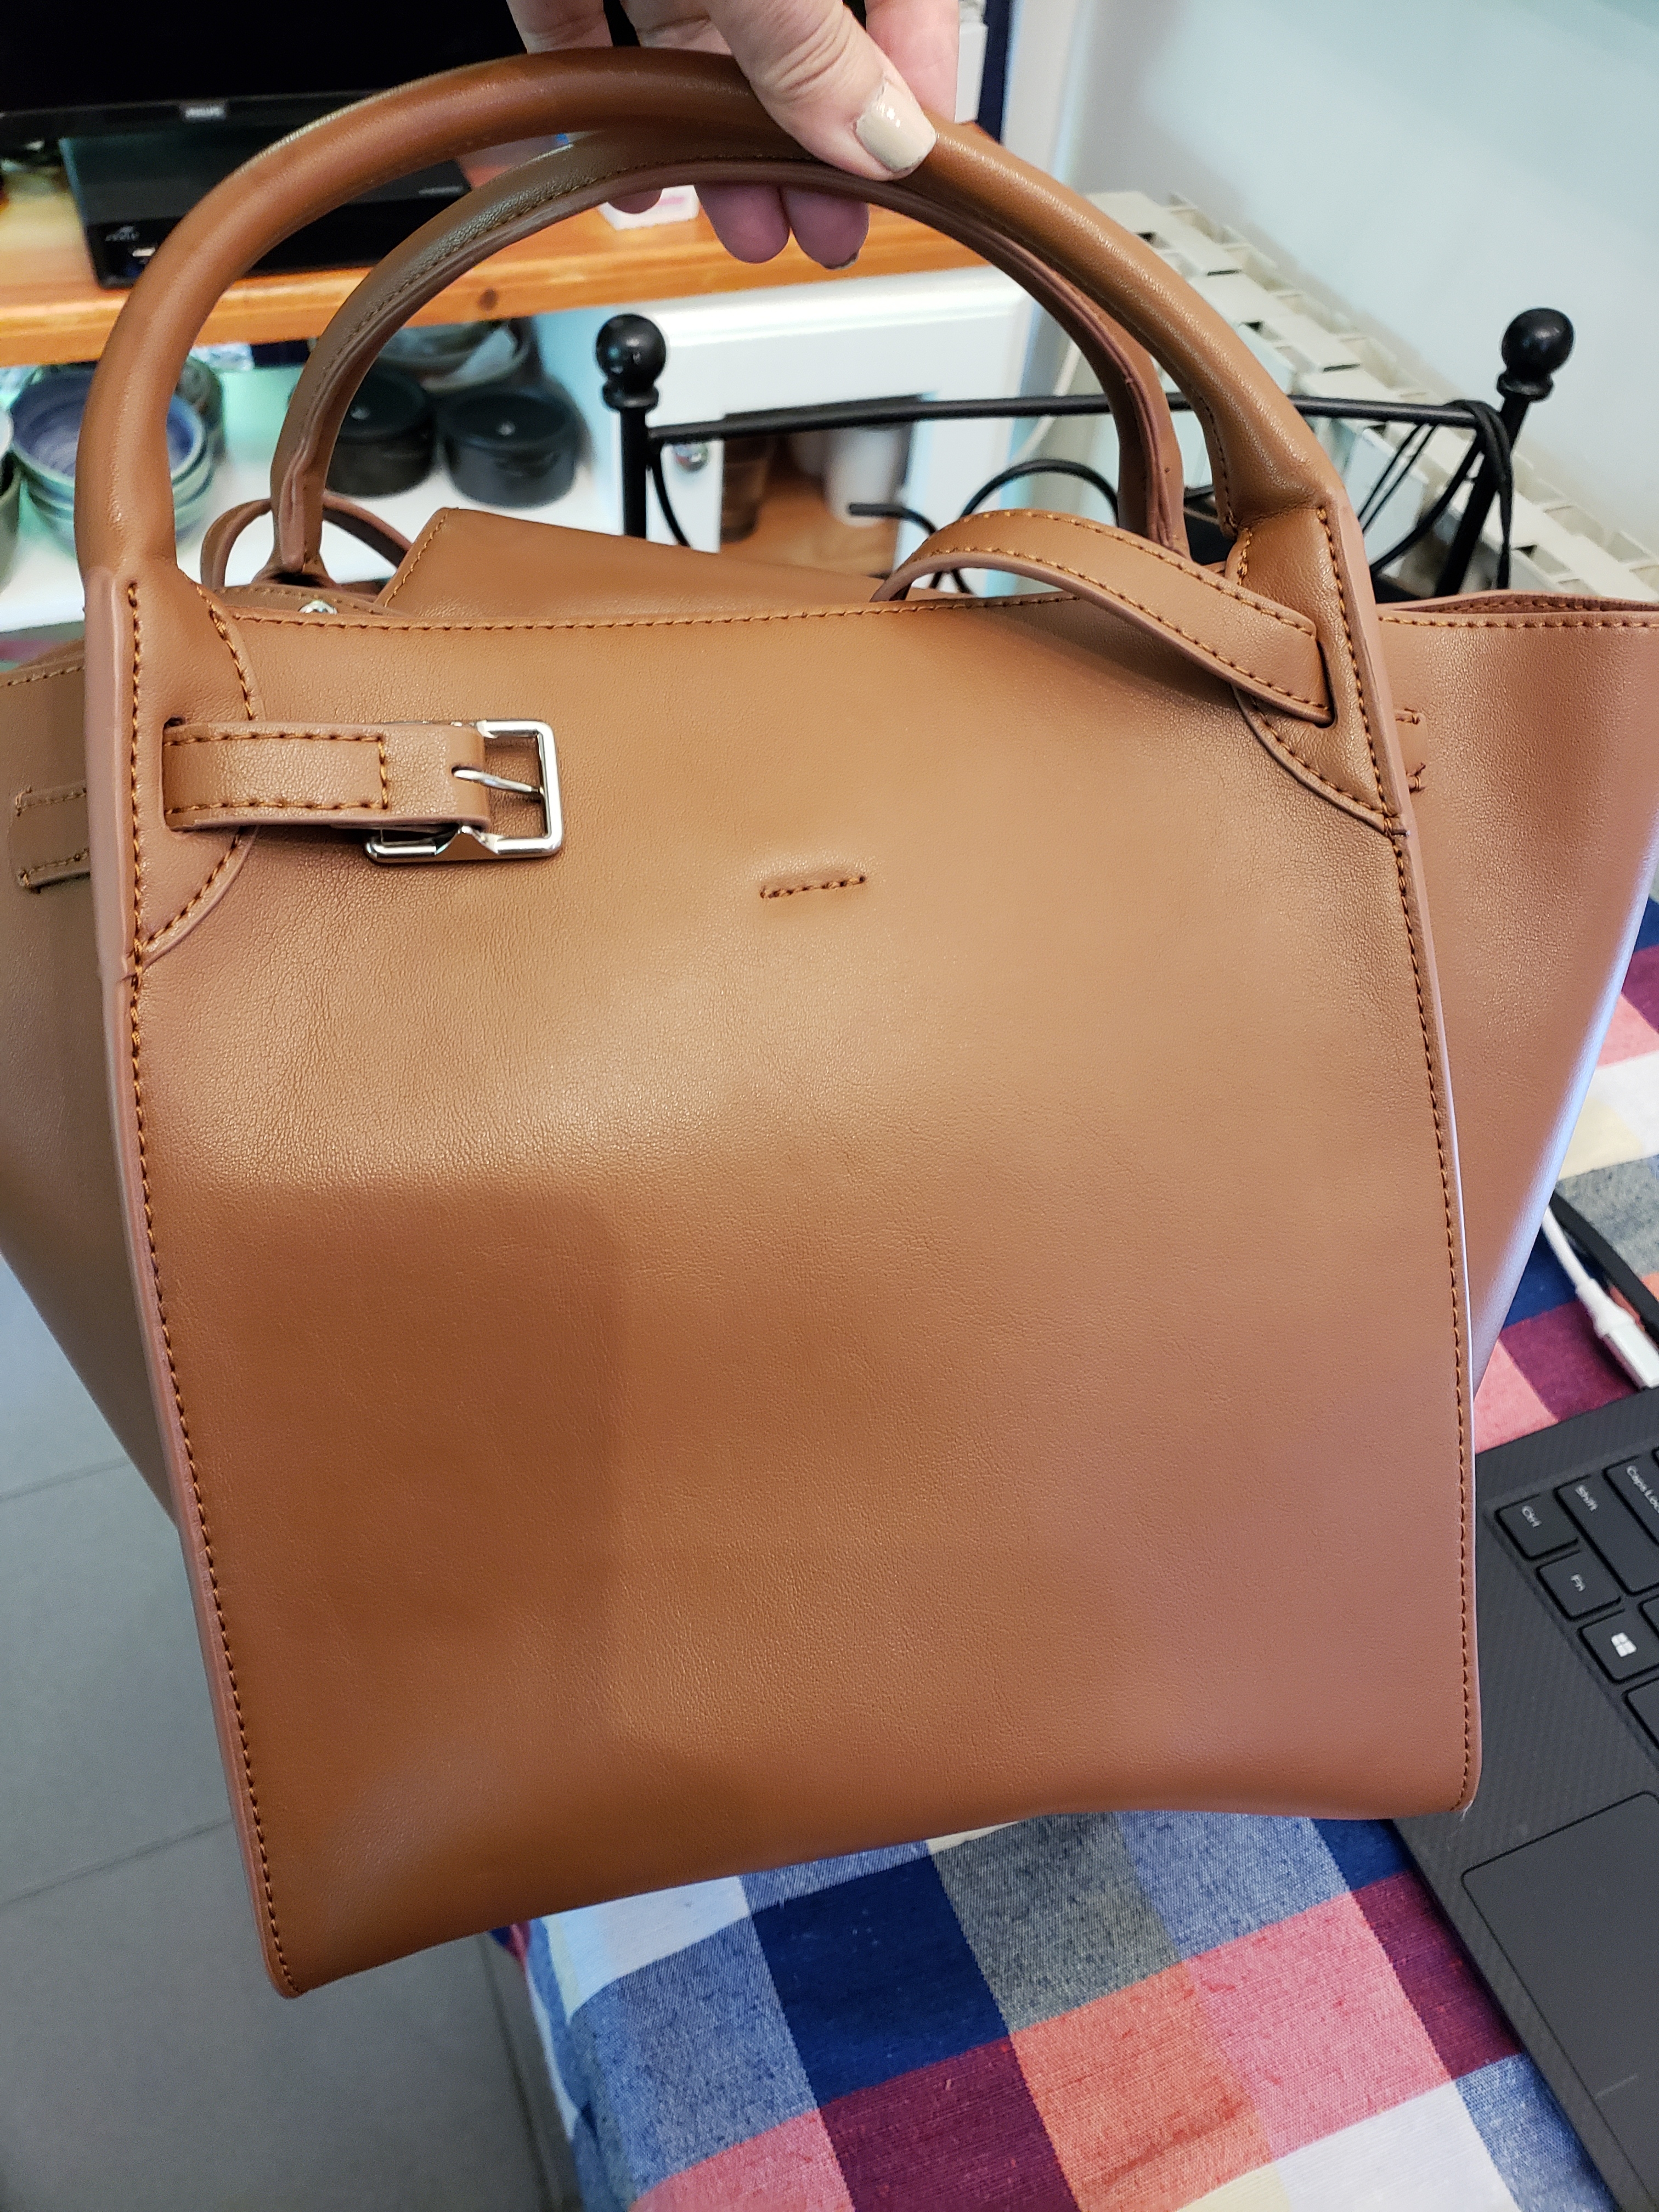 Authenticating luxury handbags made easy with OpenLuxury - OpenLuxury